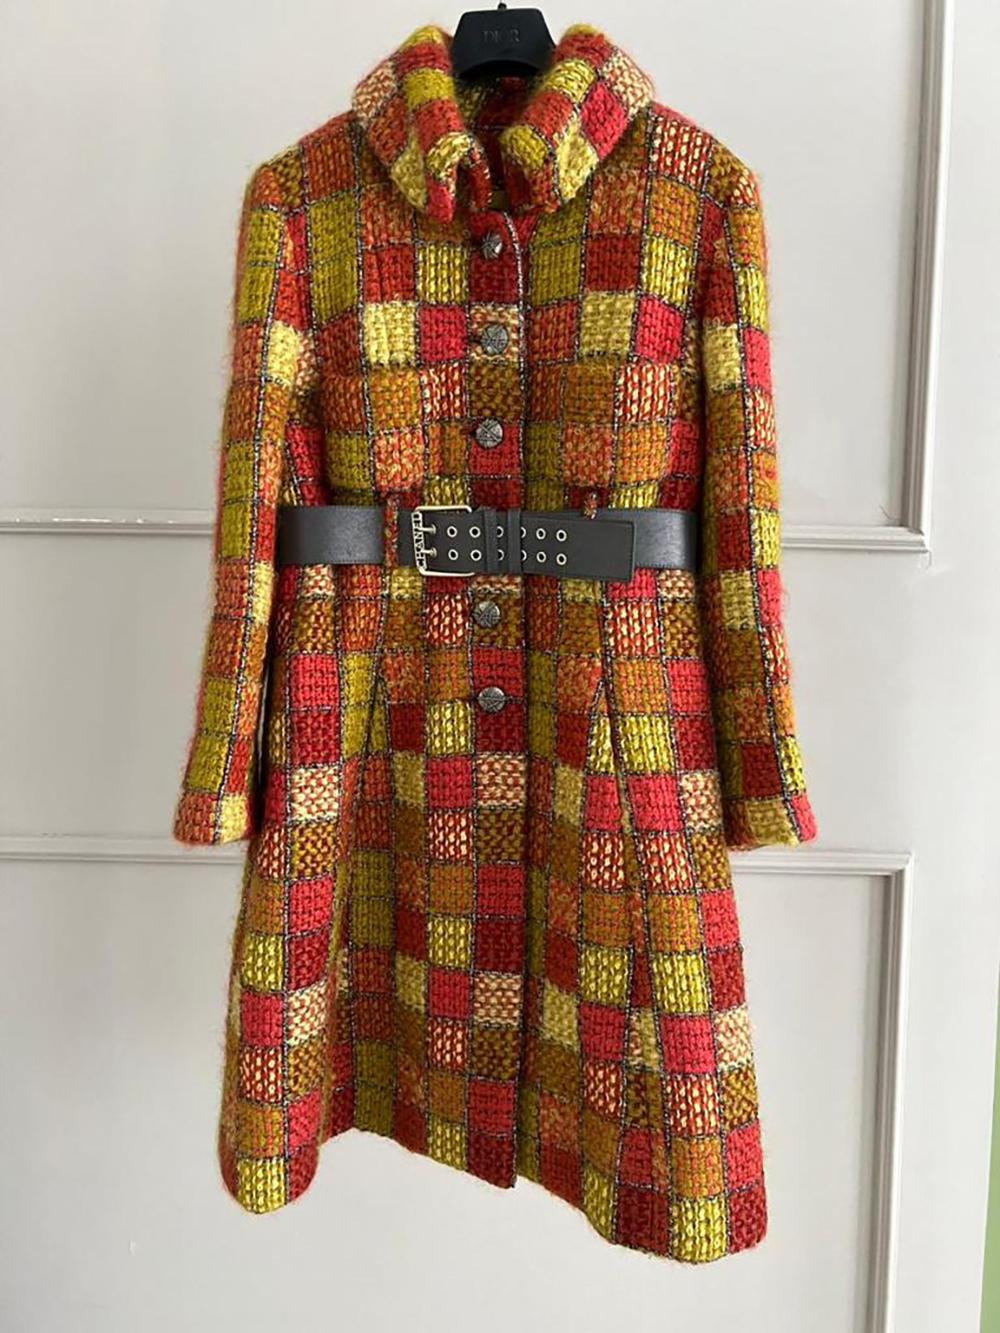 Women's or Men's Chanel New Paris / Hamburg Catwalk Tweed Coat with Belt